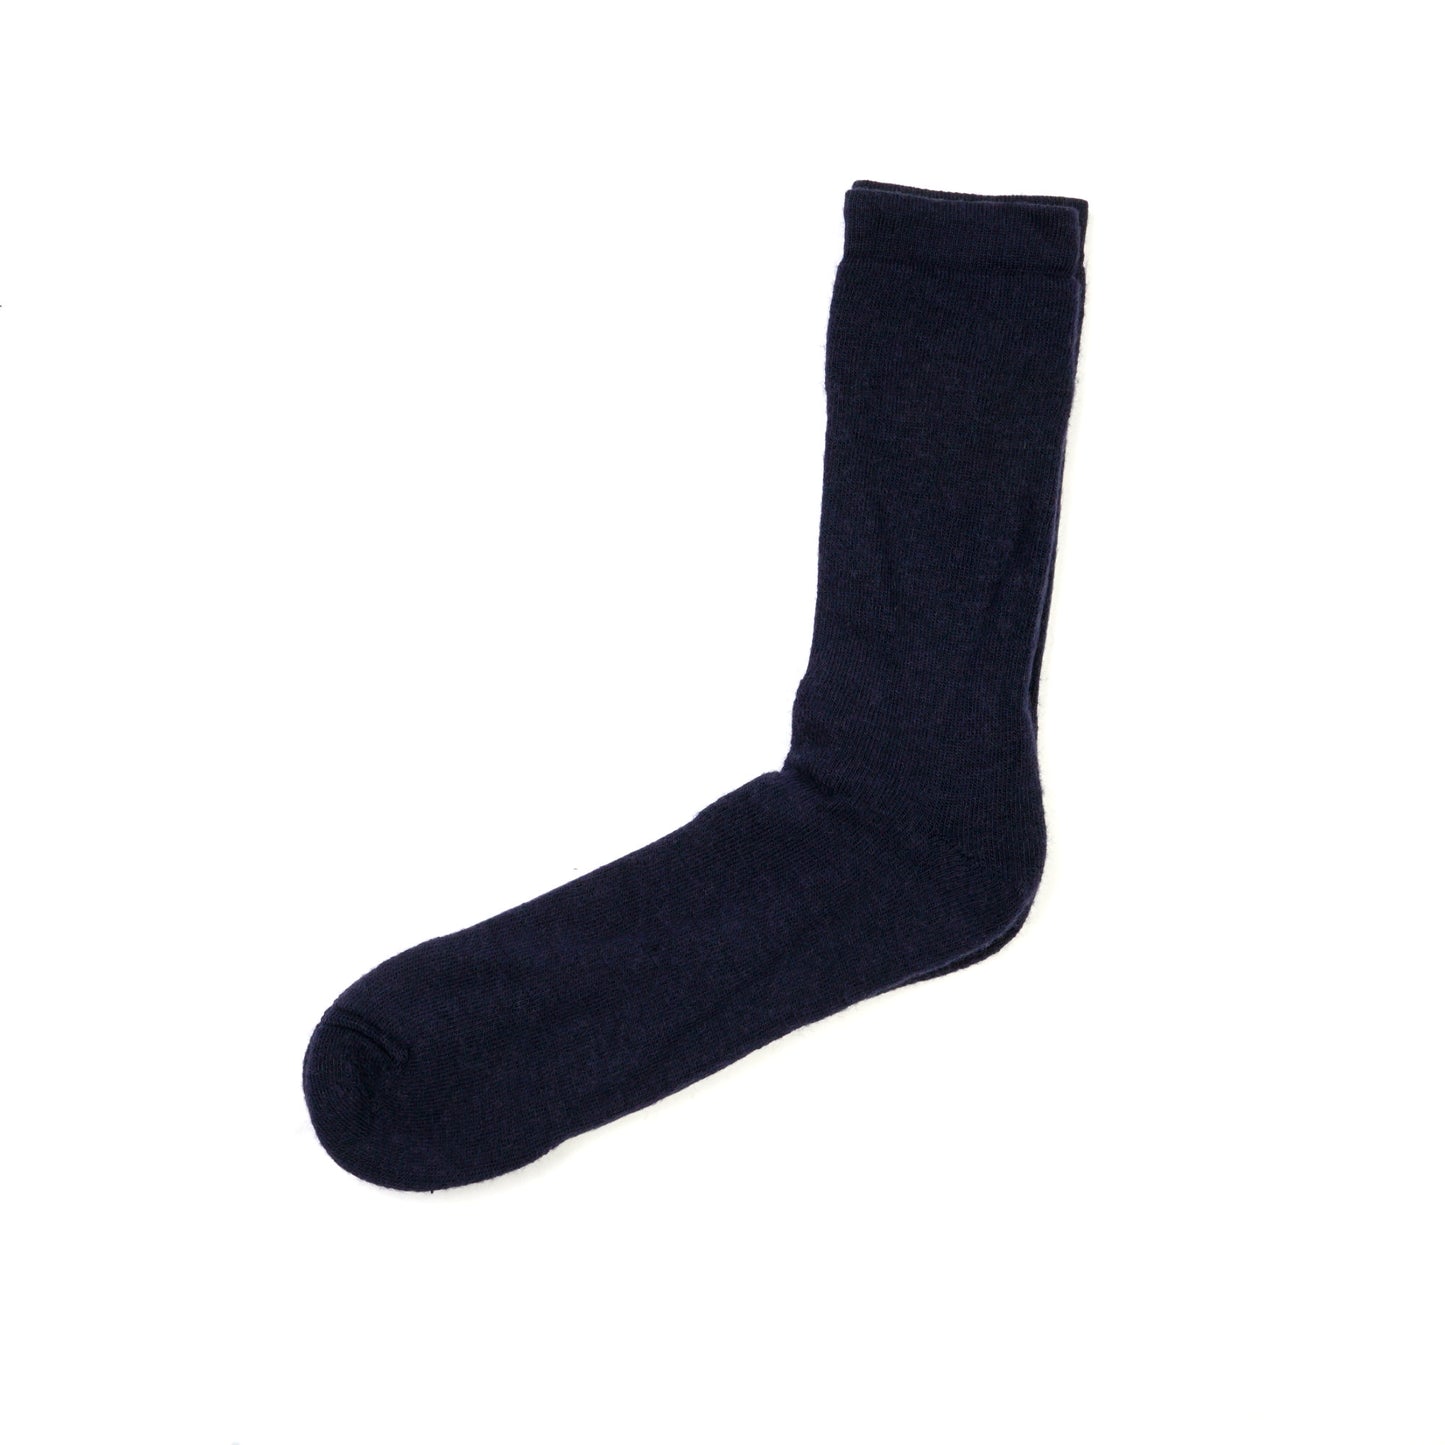 Socke 400 - Marineblau 